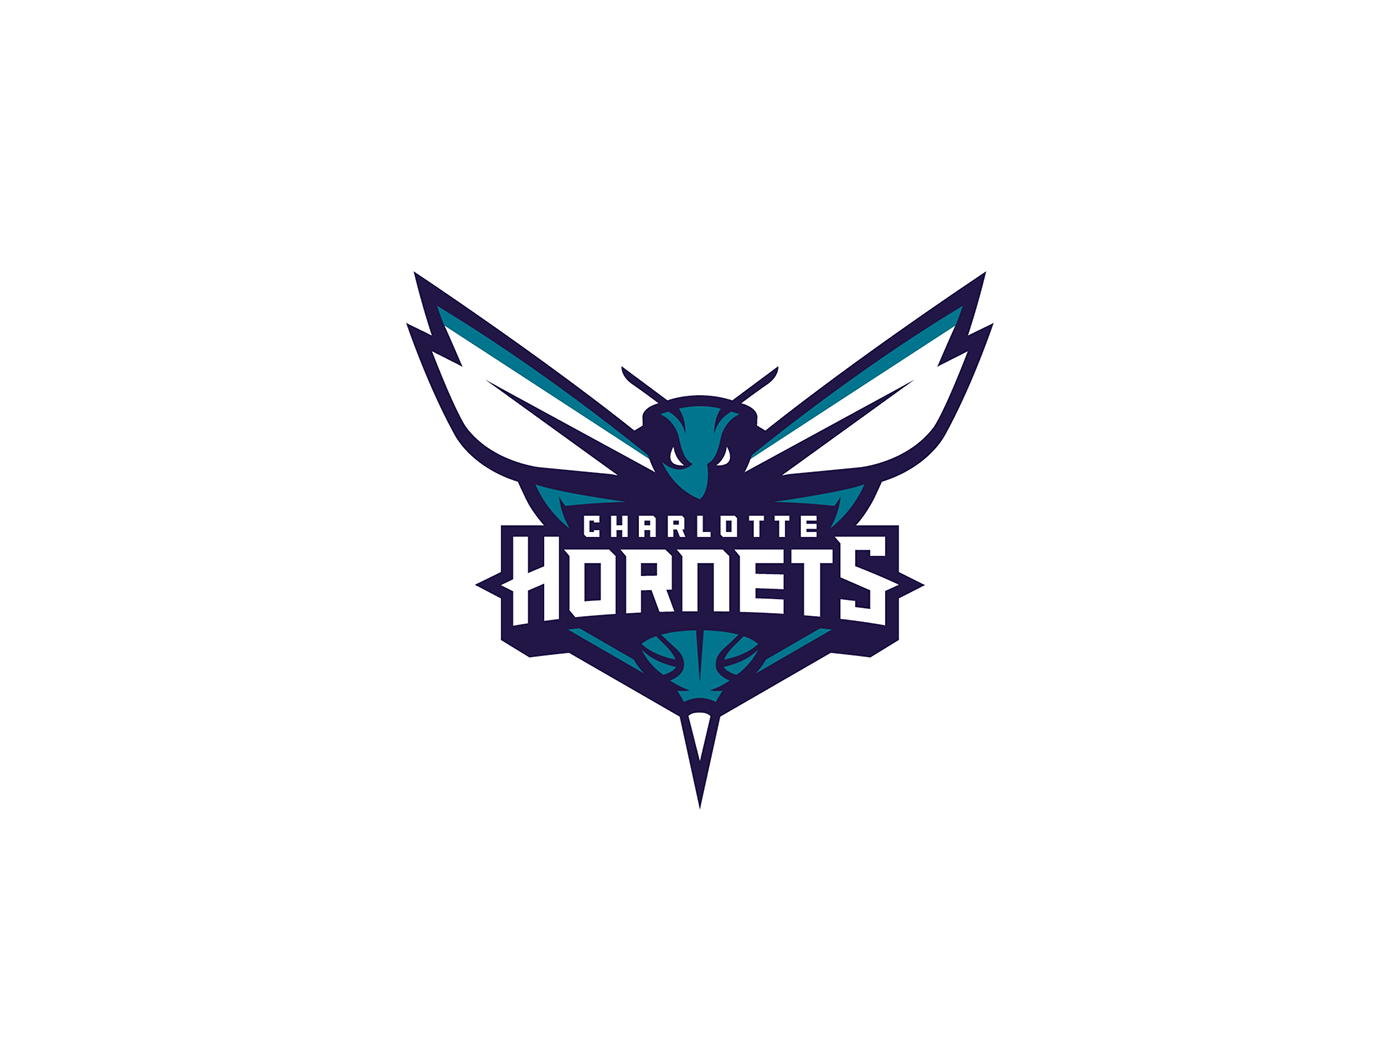 Hornets Logo - Charlotte Hornets primary logo